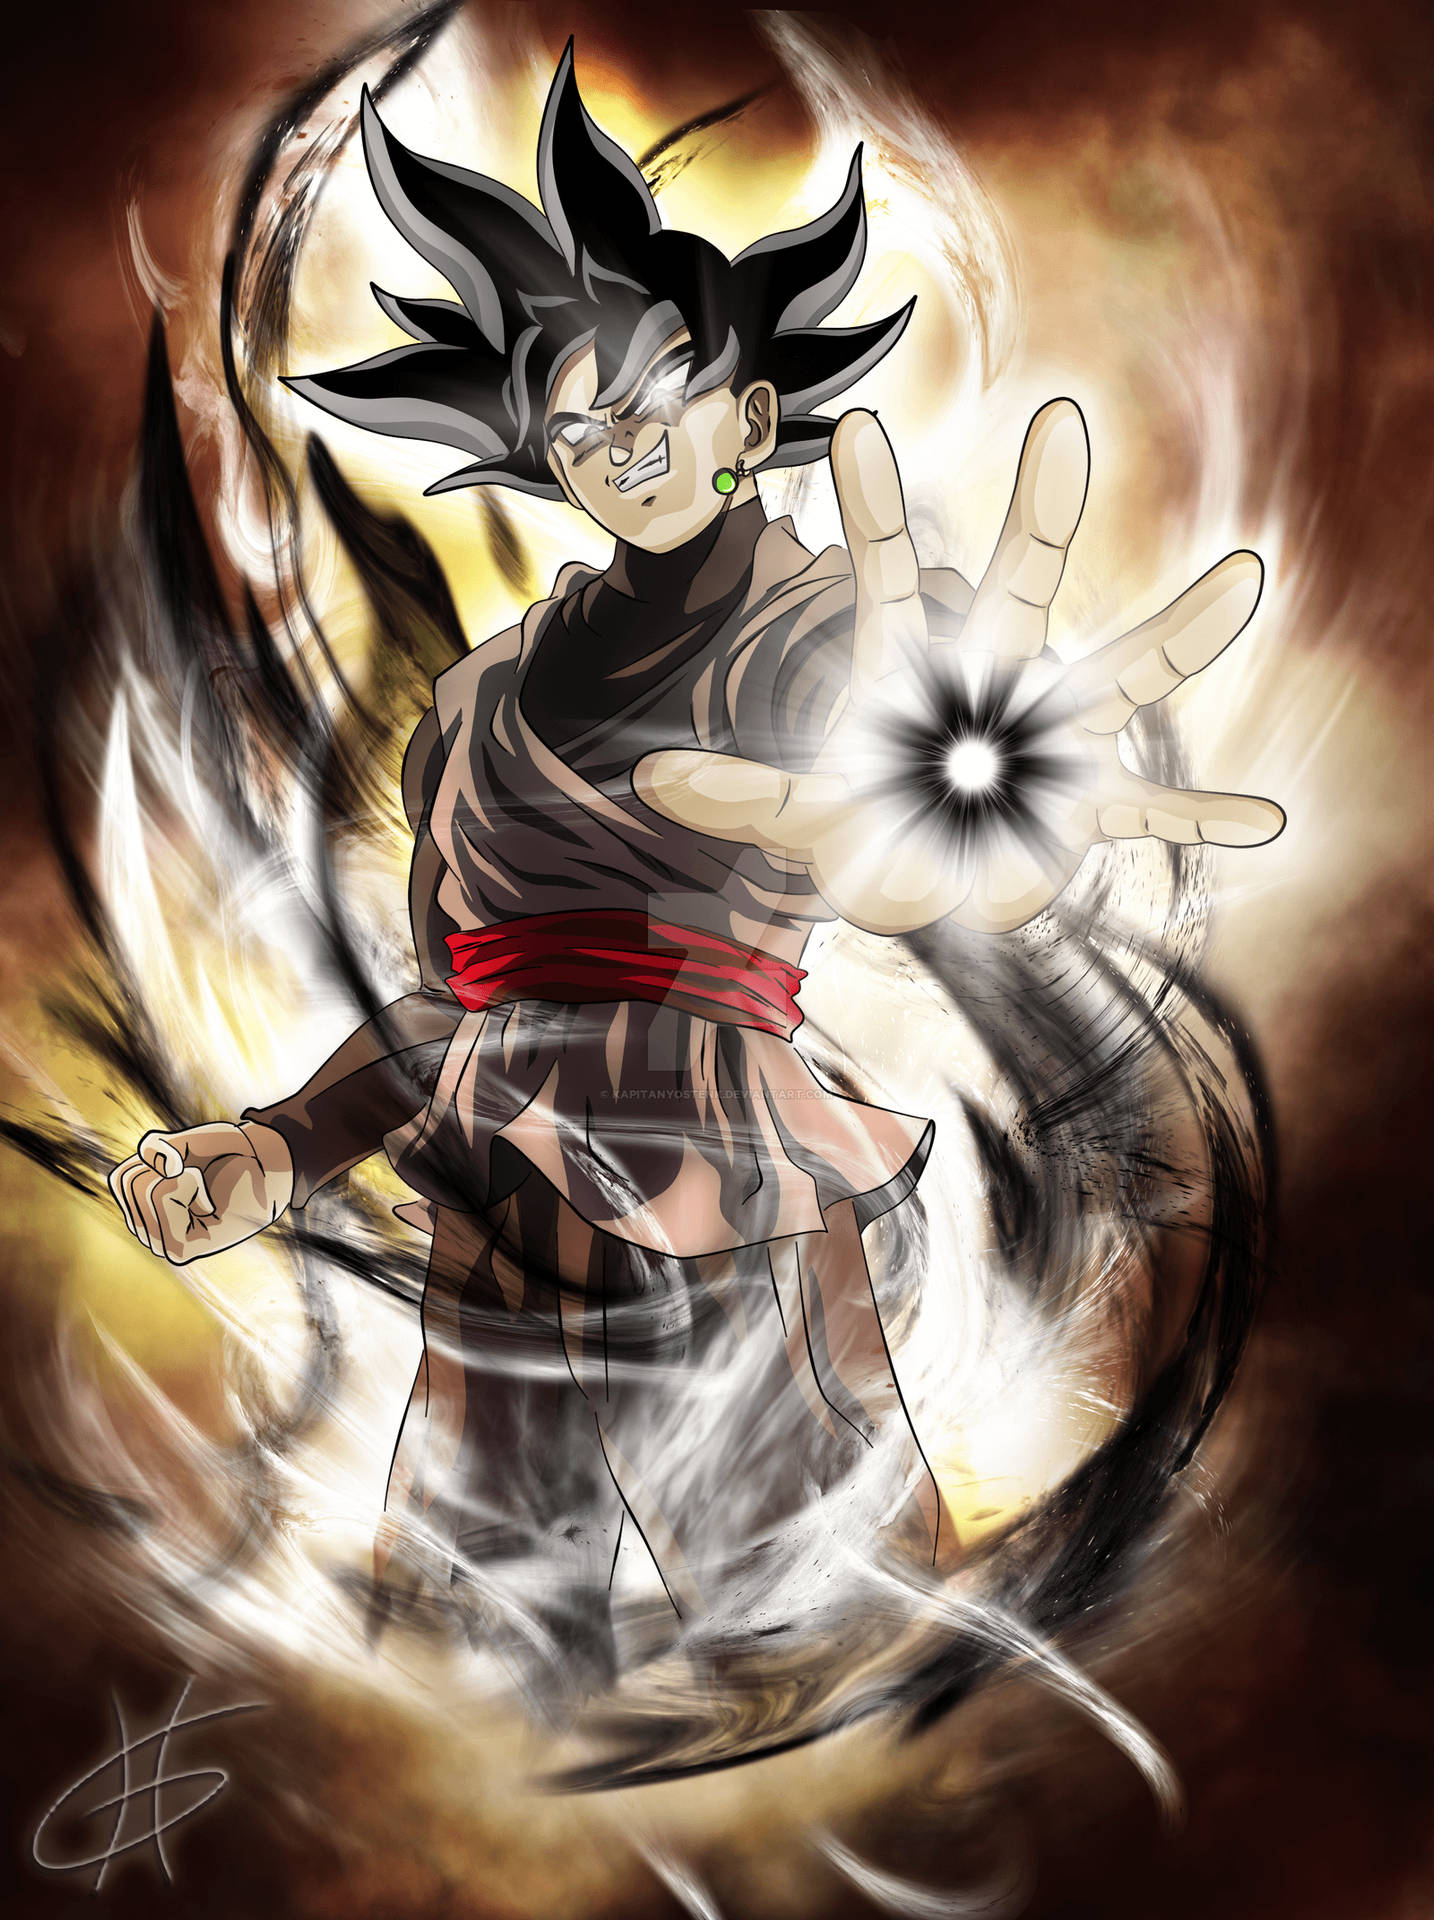 Super Black Goku